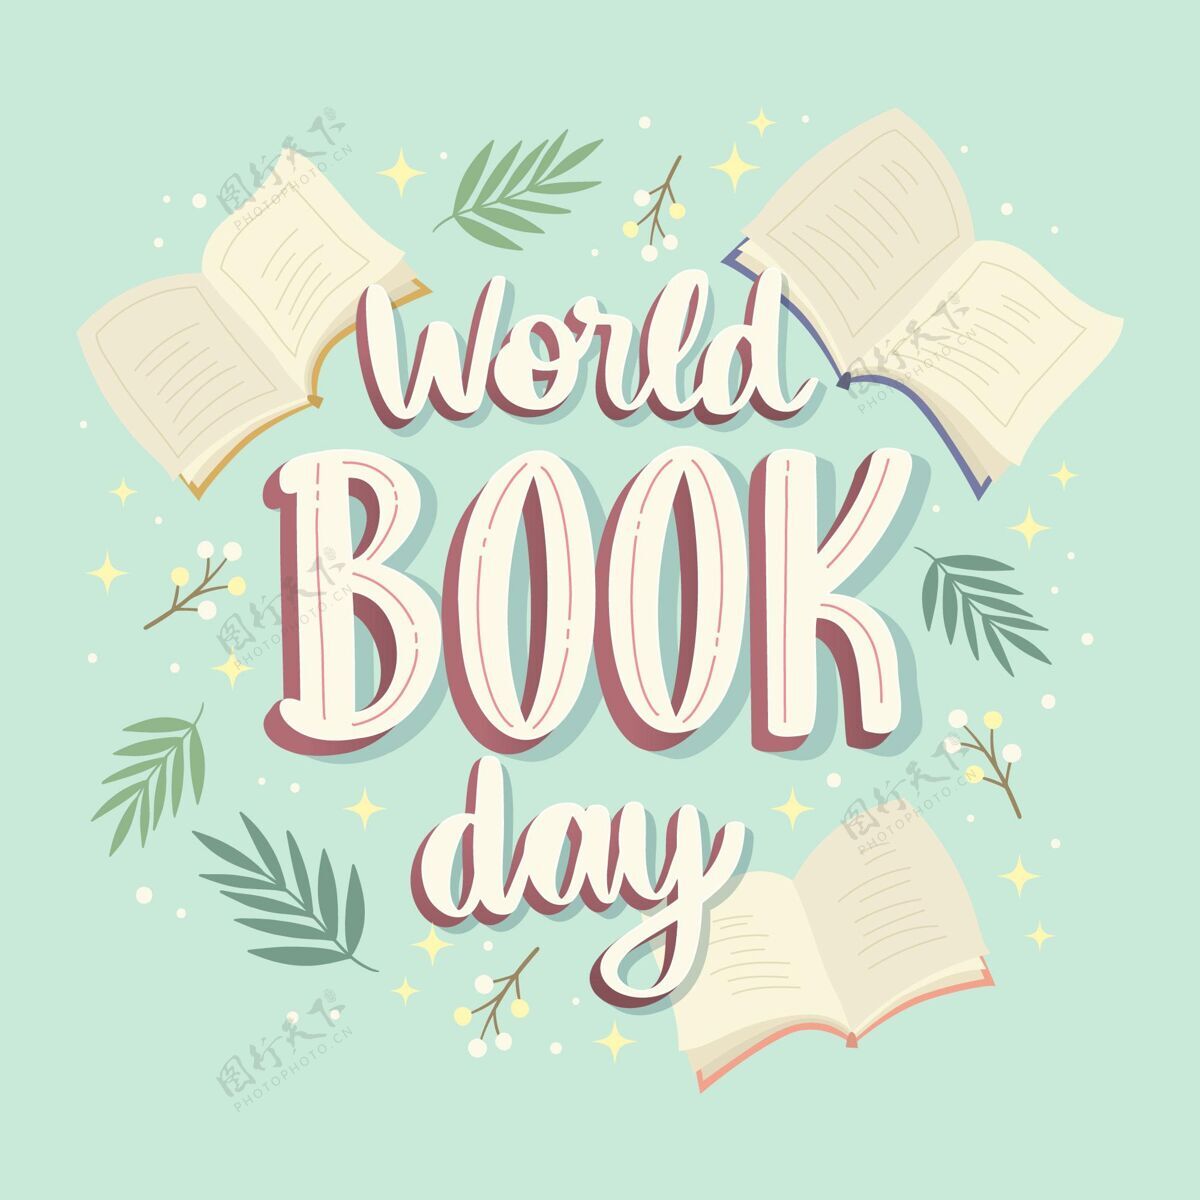 4月23日世界图书日刻字全球版权日世界图书日